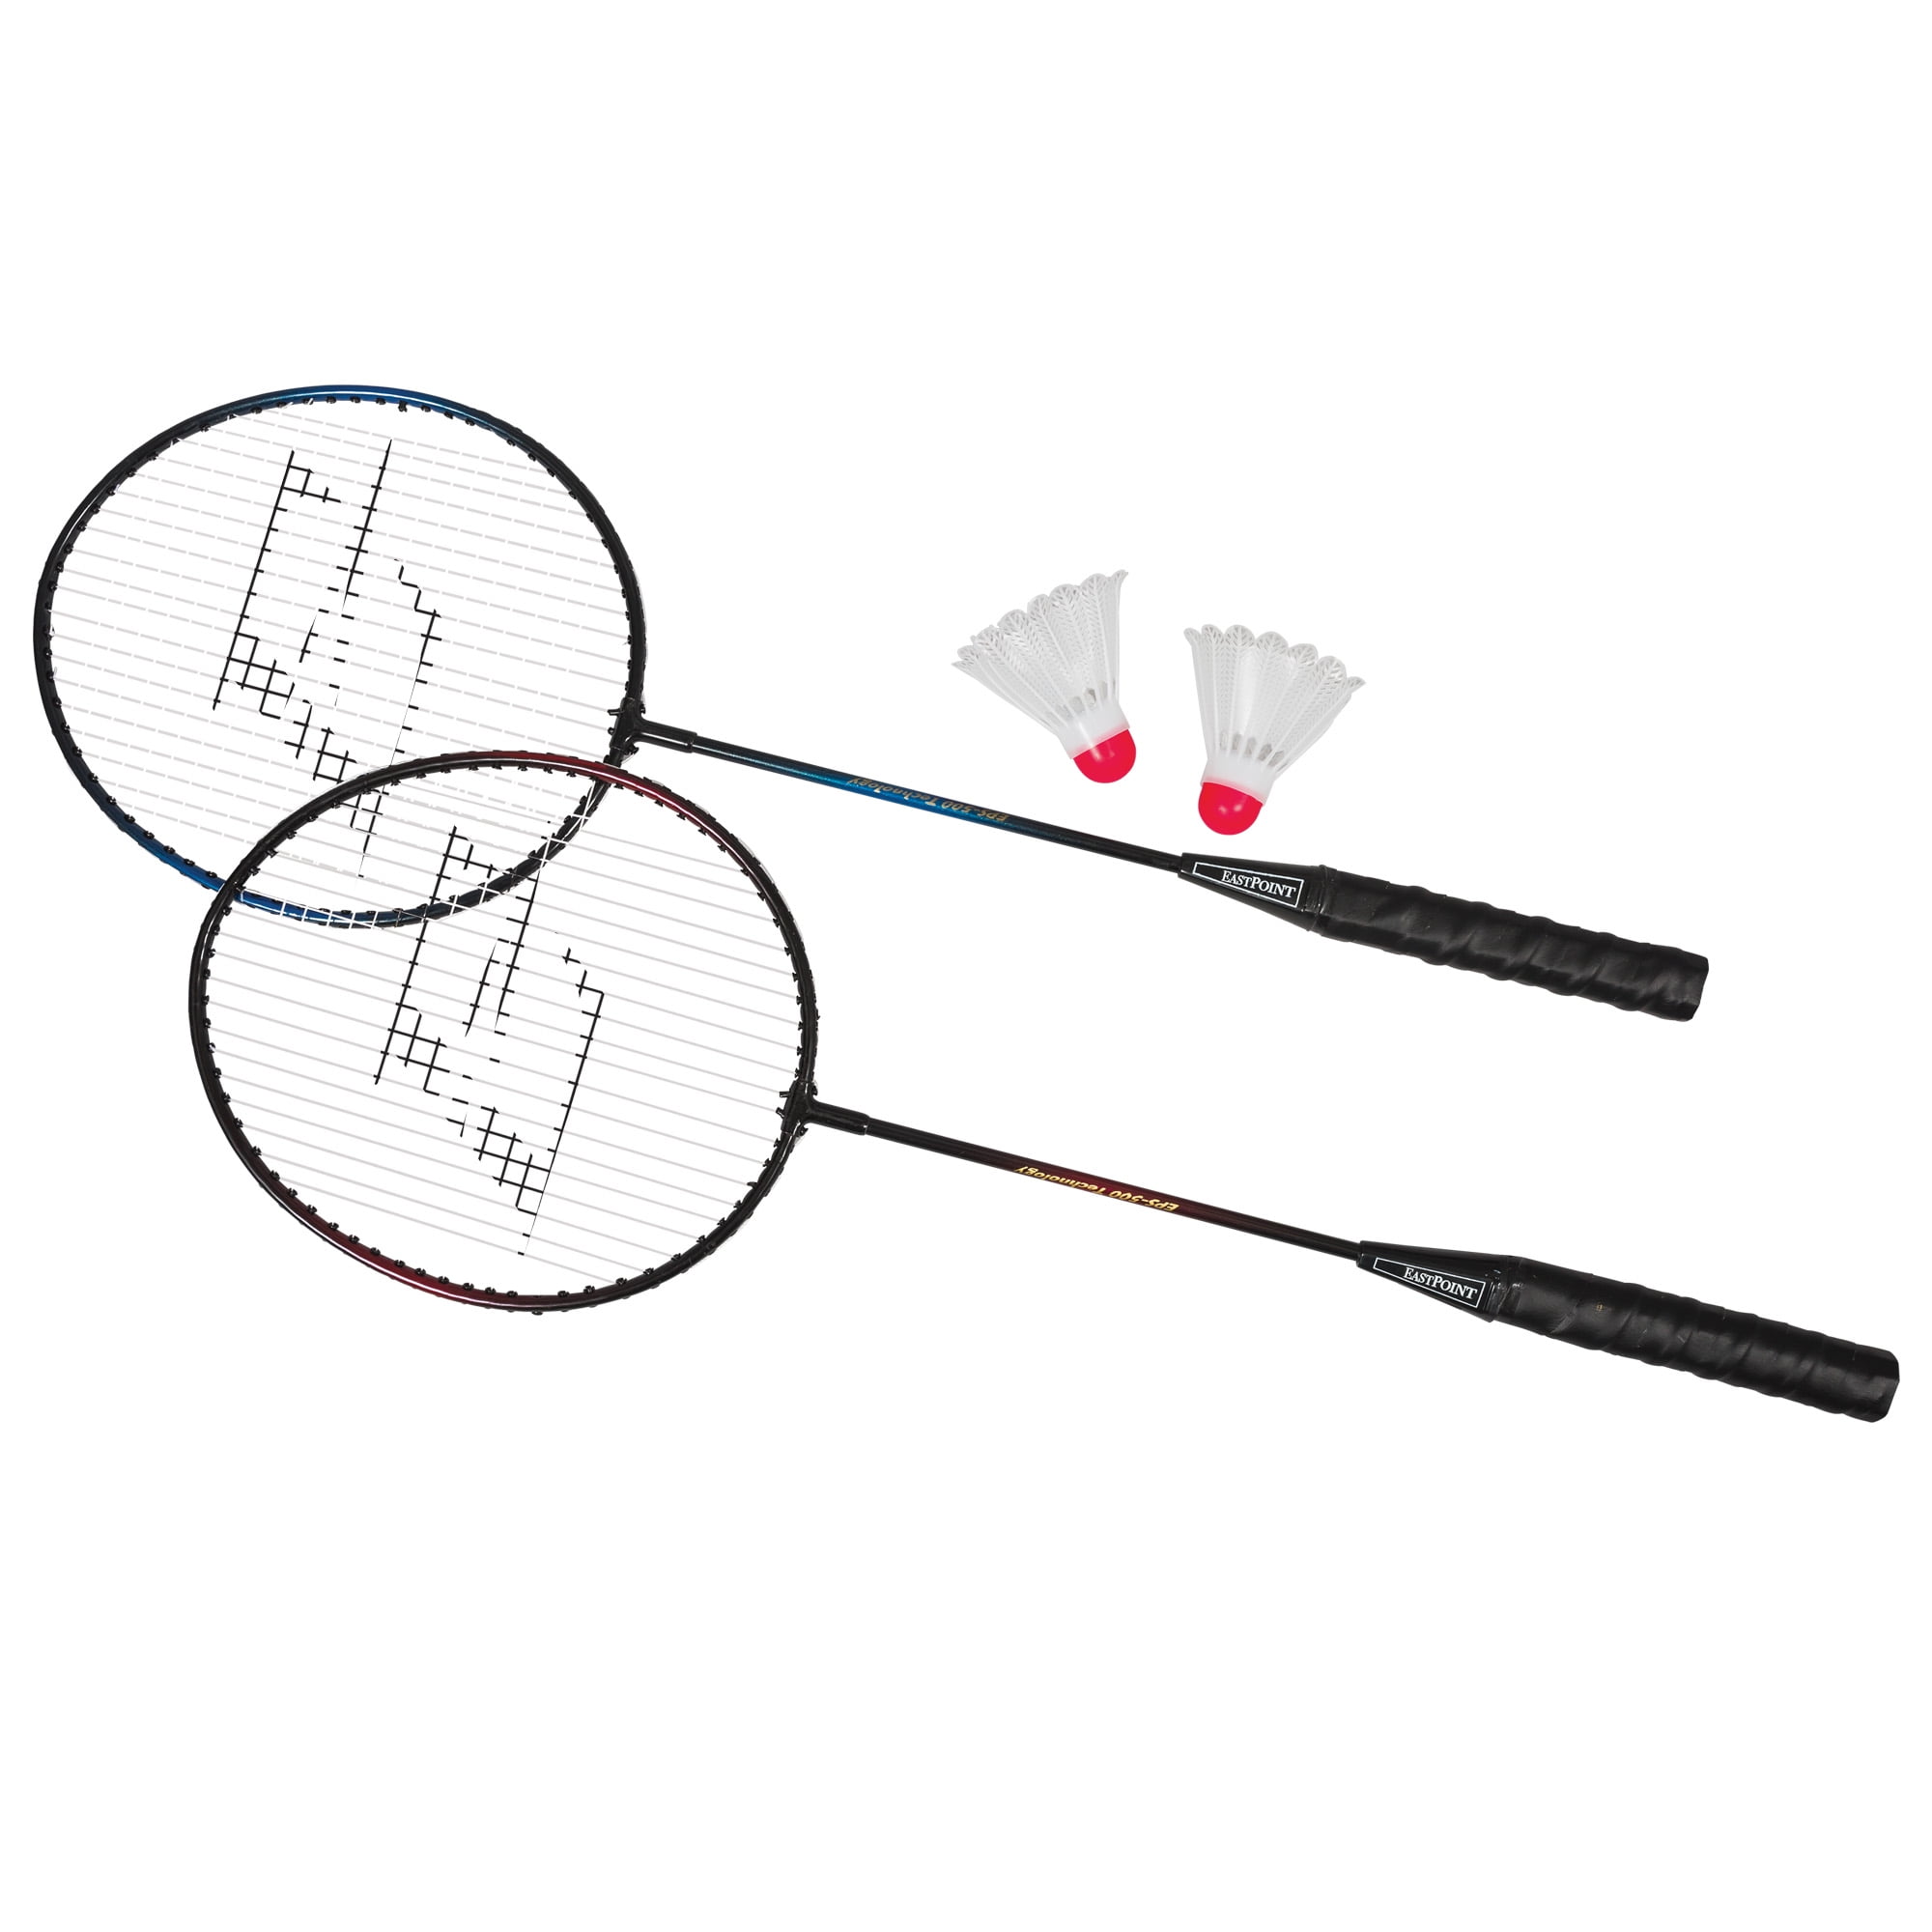 EastPoint Sports 2 Player Badminton Racket Set 